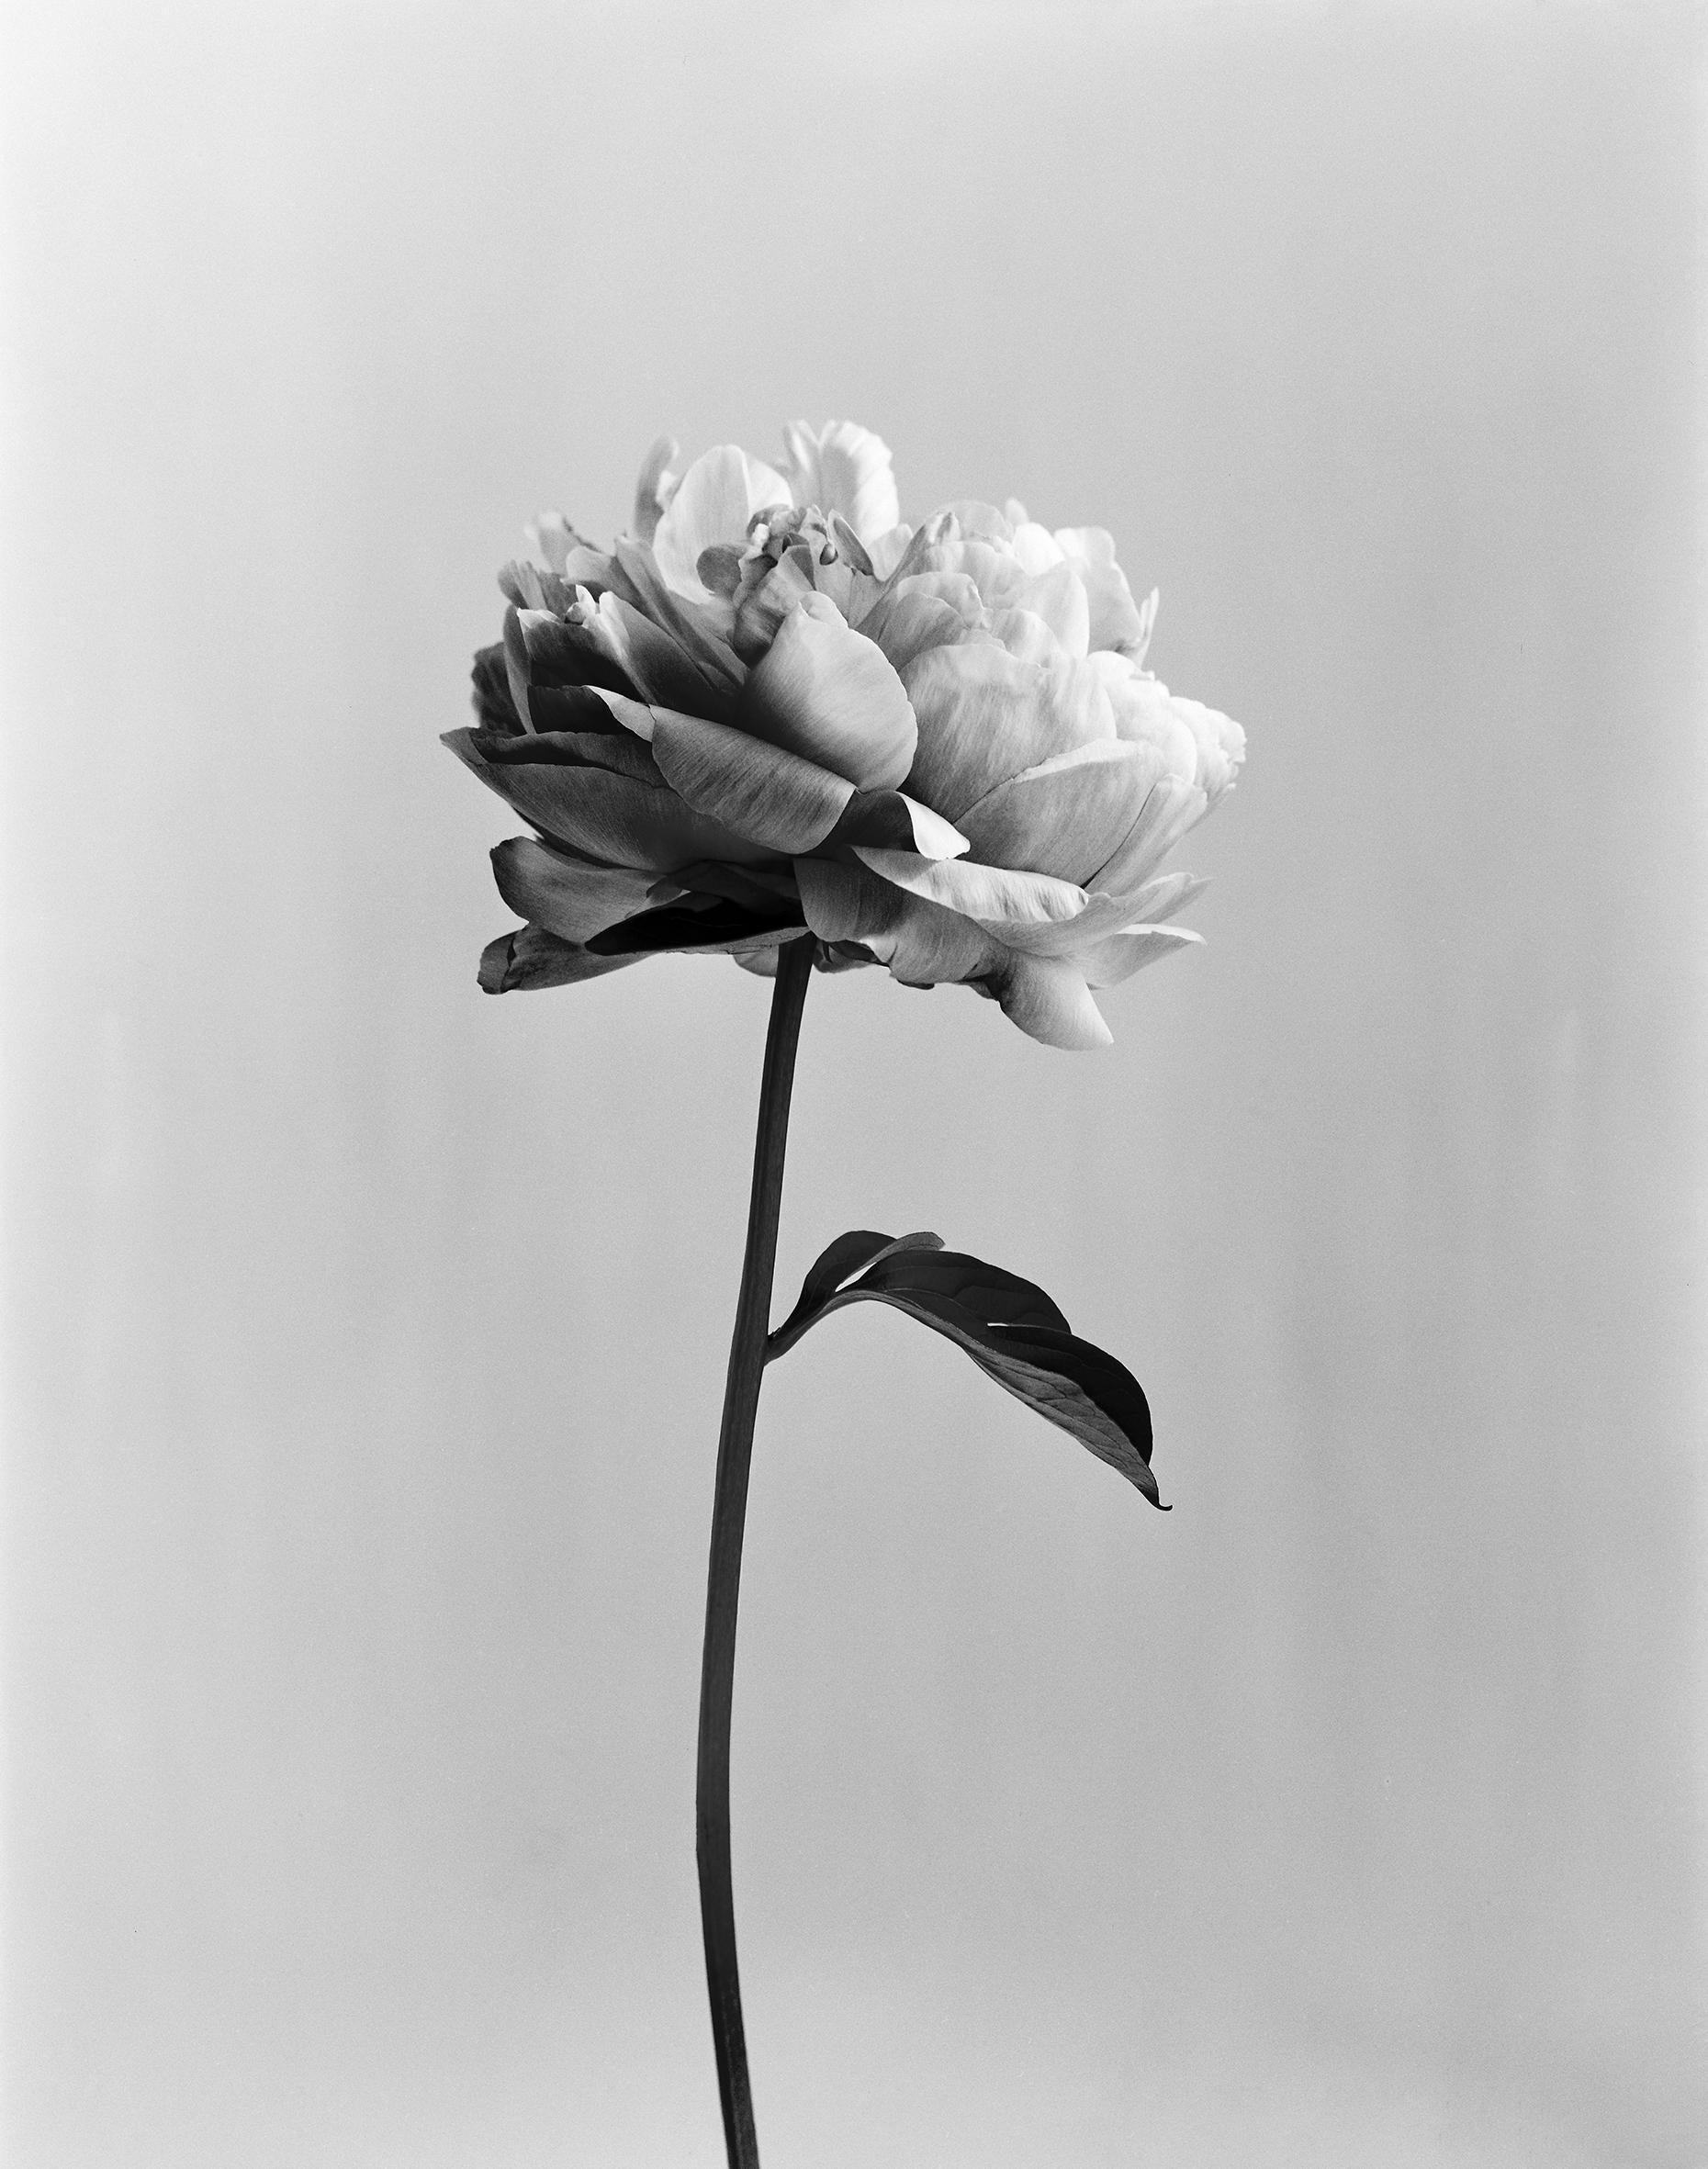 Peony no.3 – analoge schwarz-weiße Blumenfotografie, limitierte Auflage von 20 Stück